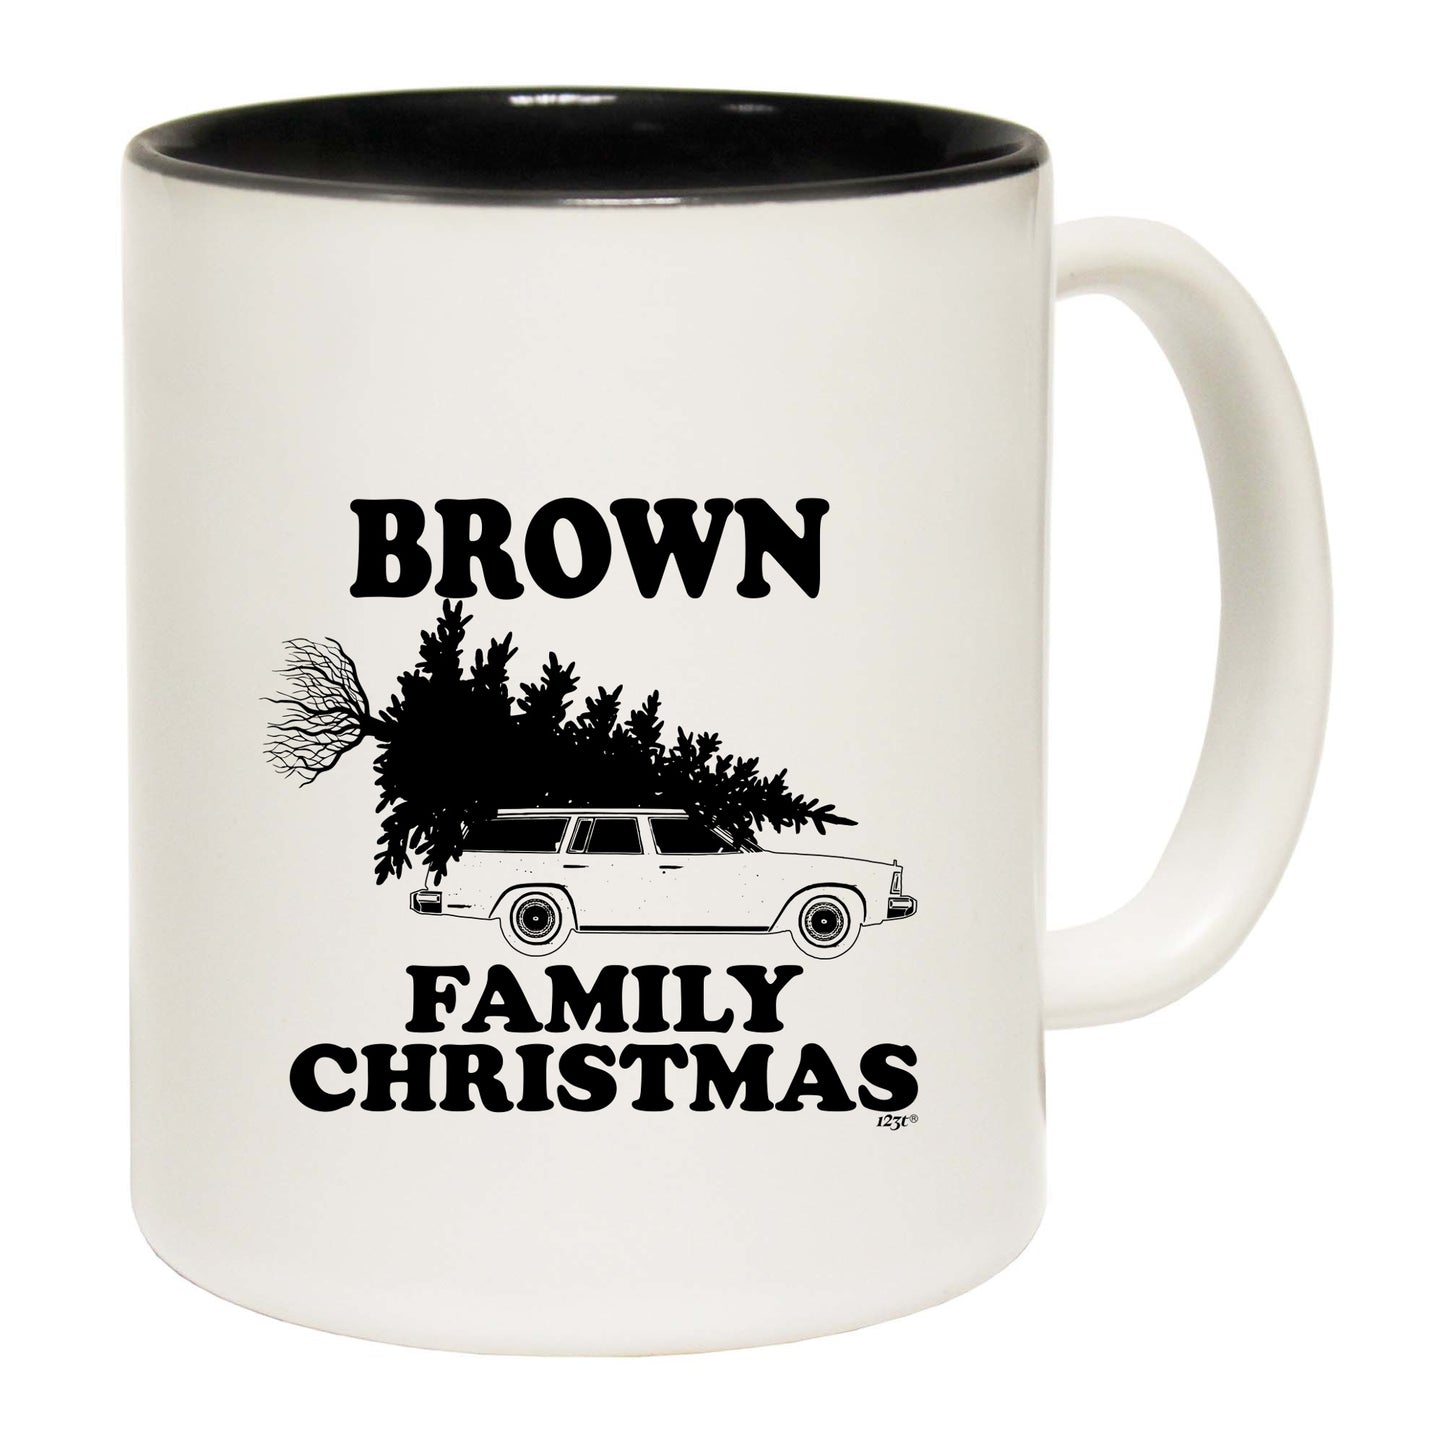 The Christmas Hub - Family Christmas Brown - Funny Coffee Mug